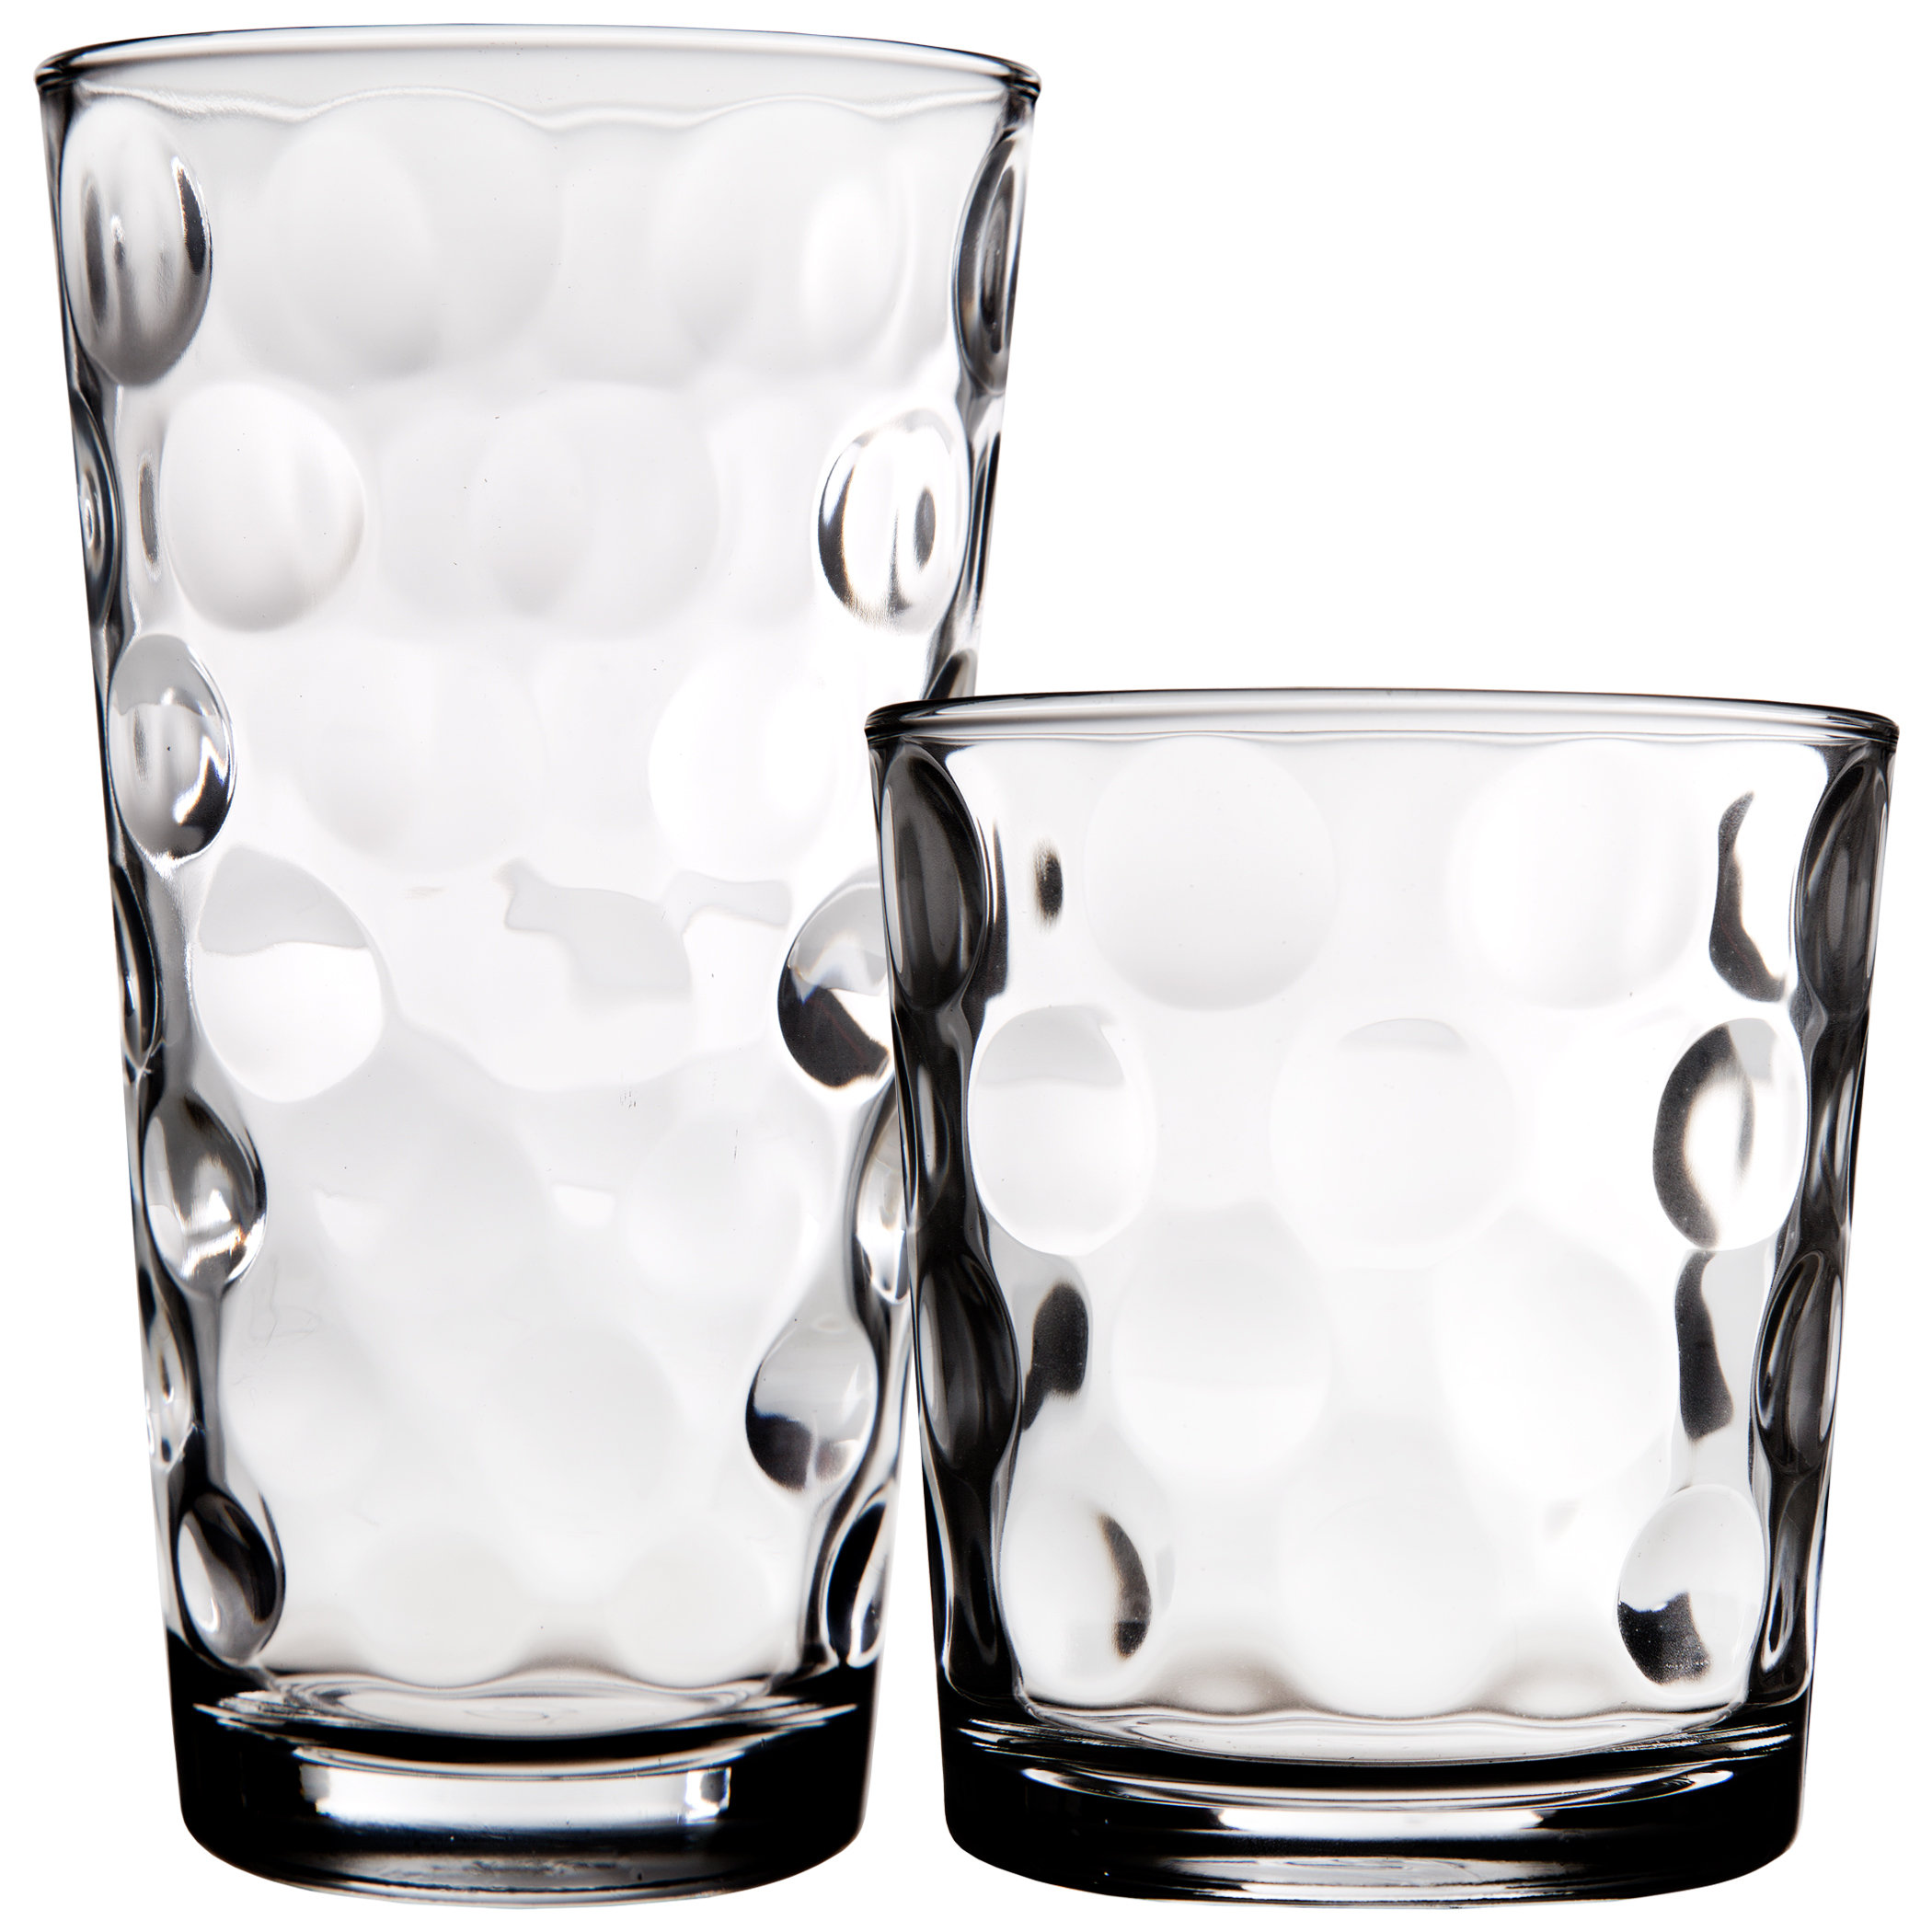 https://assets.wfcdn.com/im/24858323/compr-r85/6129/61299918/highland-dunes-wallsend-16-piece-glass-drinking-glass-assorted-glassware-set.jpg